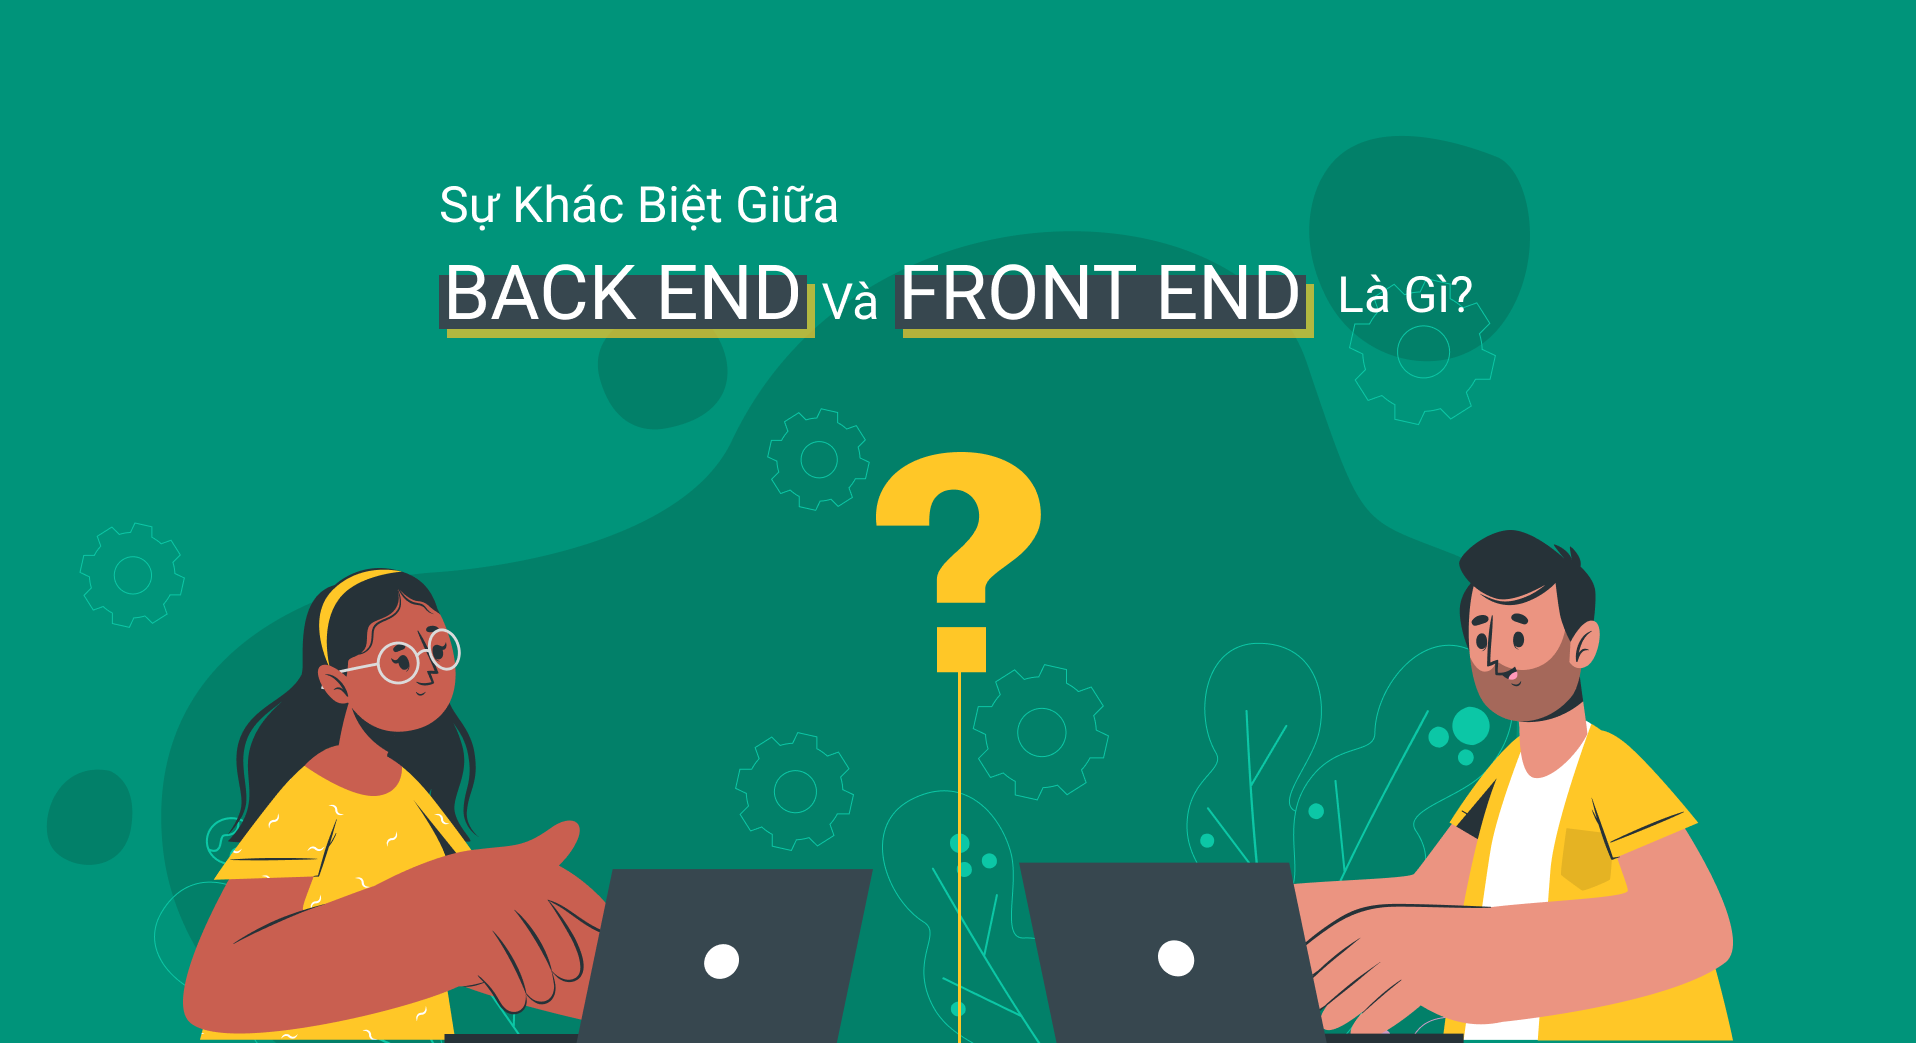 Front end, Back end là gì? Phân biệt và so sánh Front end và Back end trong lập trình